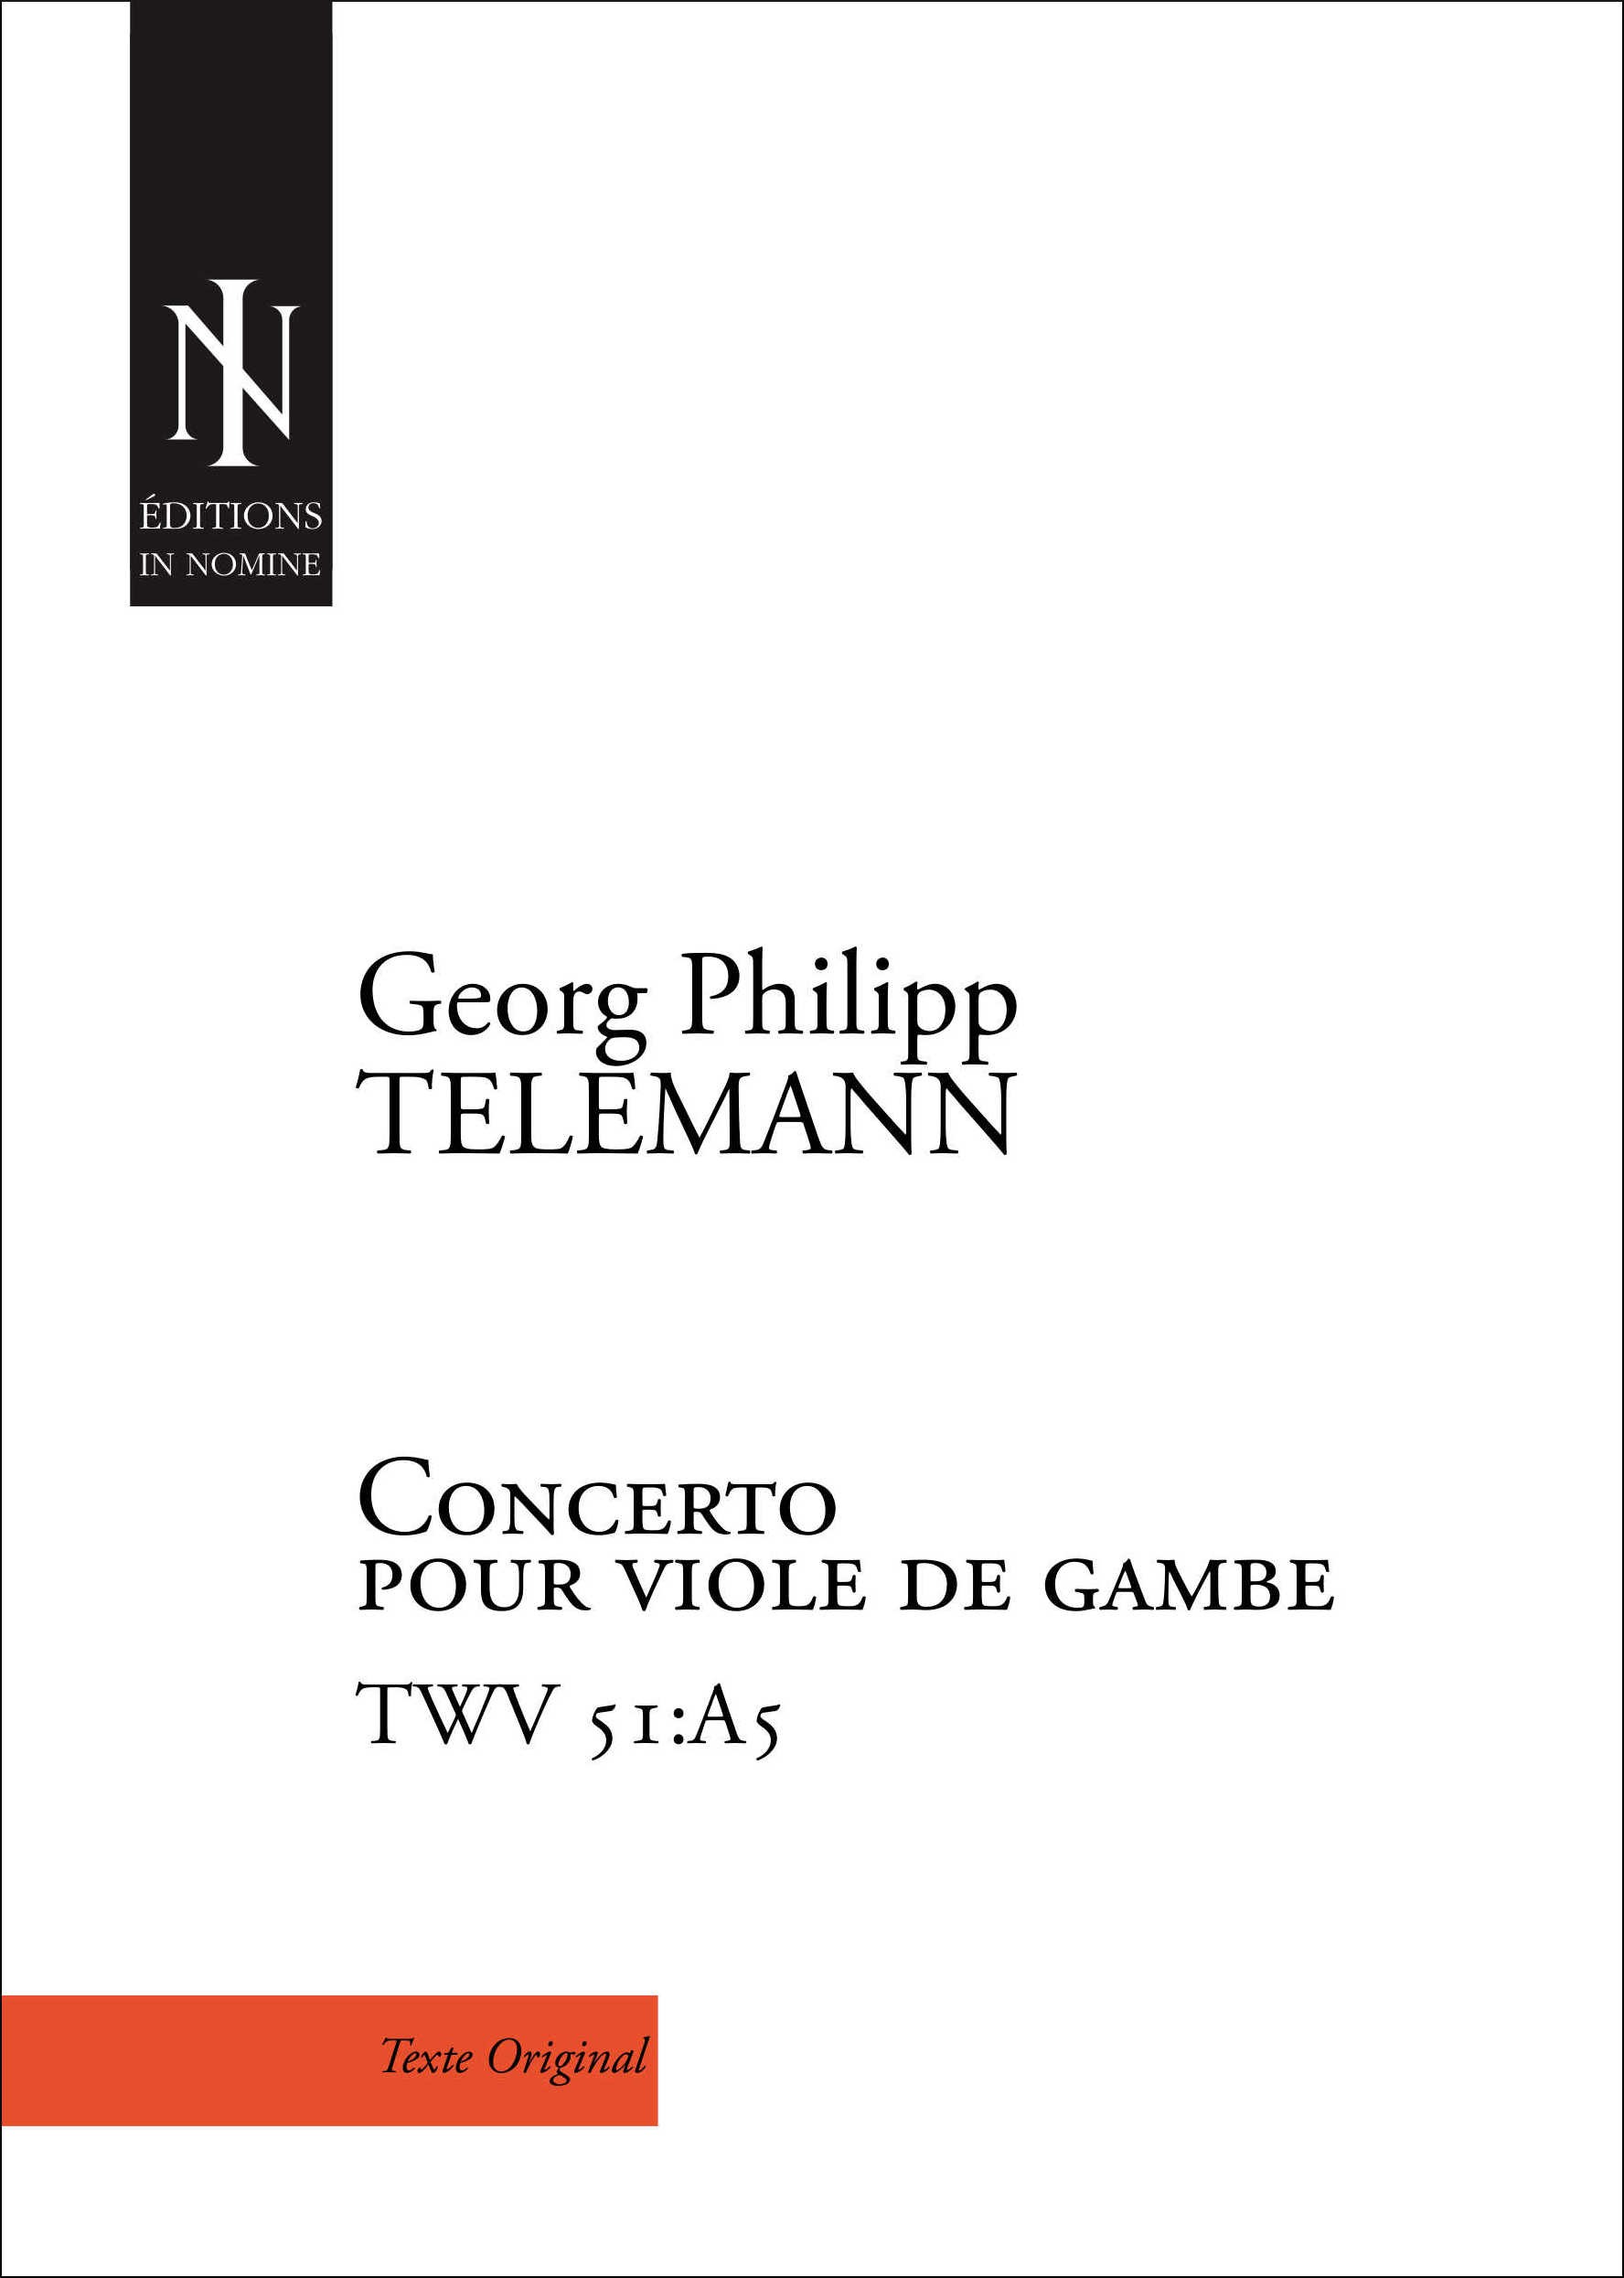 Concerto Pour Viole De Gambe En La Majeur Twv 51:A5 (TELEMANN GEORG PHILIPP)